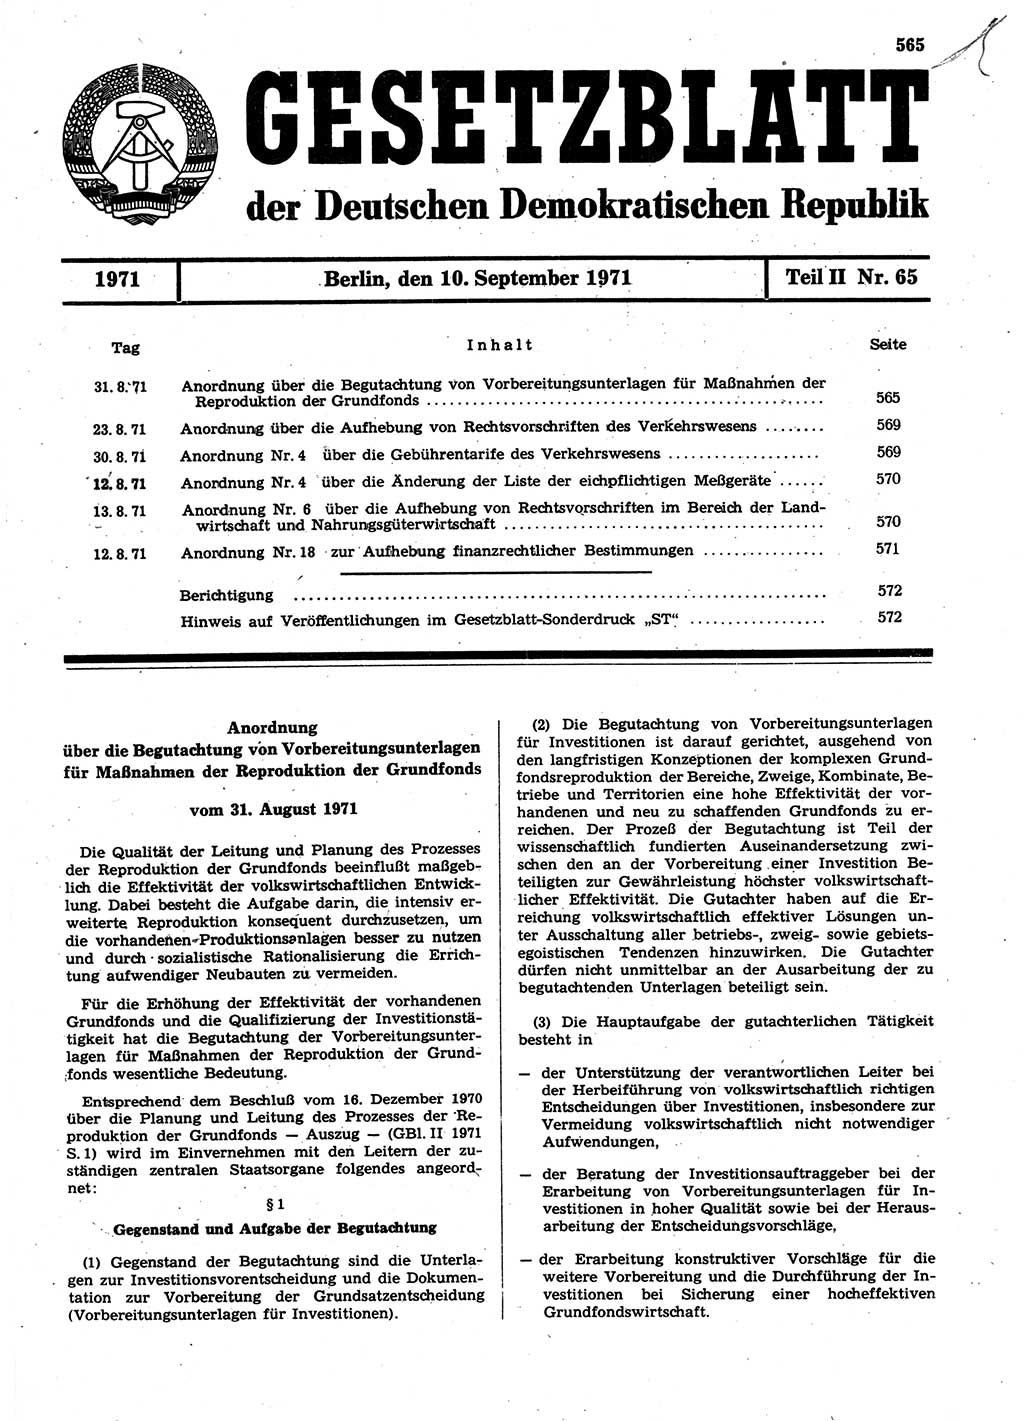 Gesetzblatt (GBl.) der Deutschen Demokratischen Republik (DDR) Teil ⅠⅠ 1971, Seite 565 (GBl. DDR ⅠⅠ 1971, S. 565)